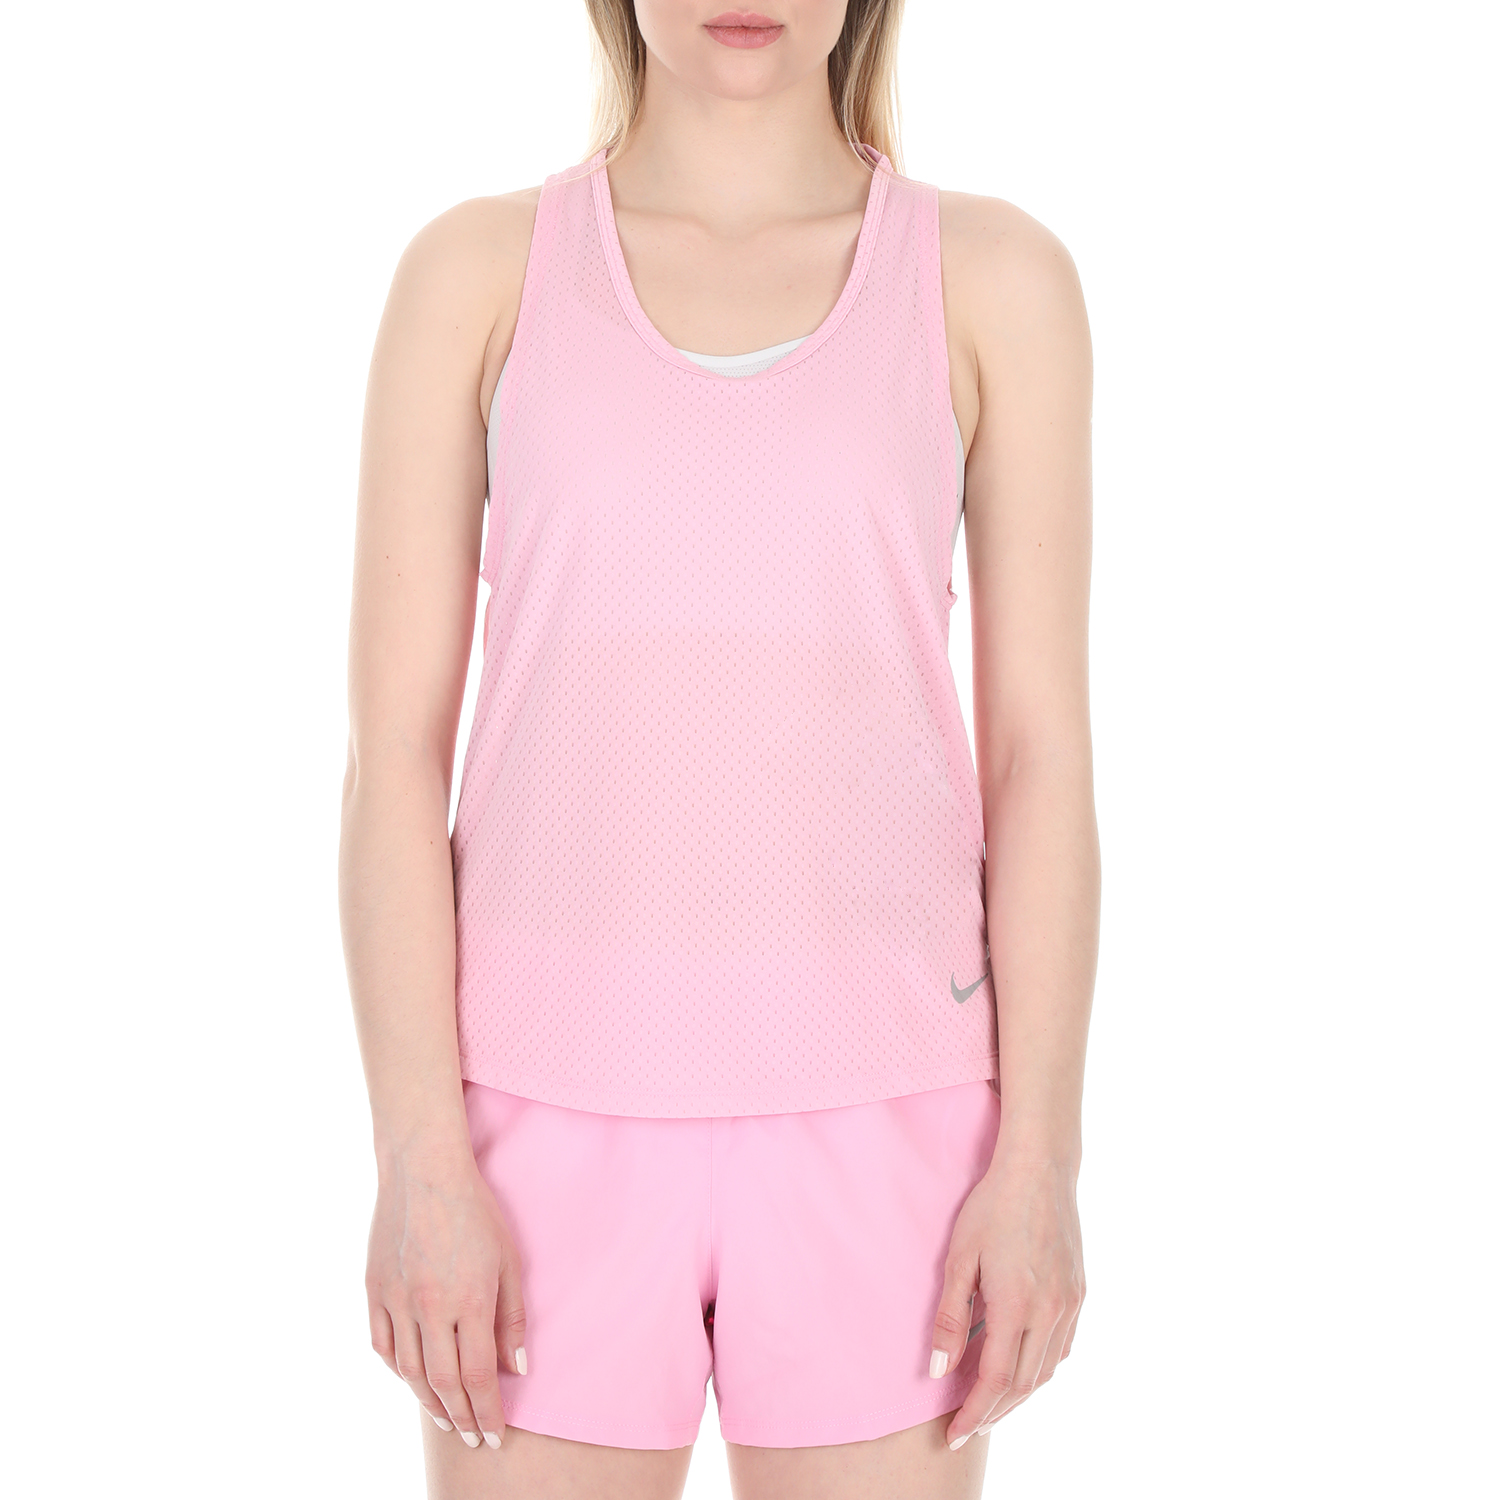 Γυναικεία/Ρούχα/Αθλητικά/T-shirt-Τοπ NIKE - Γυναικείο τοπ NIKE MILER TANK BREATHE ροζ